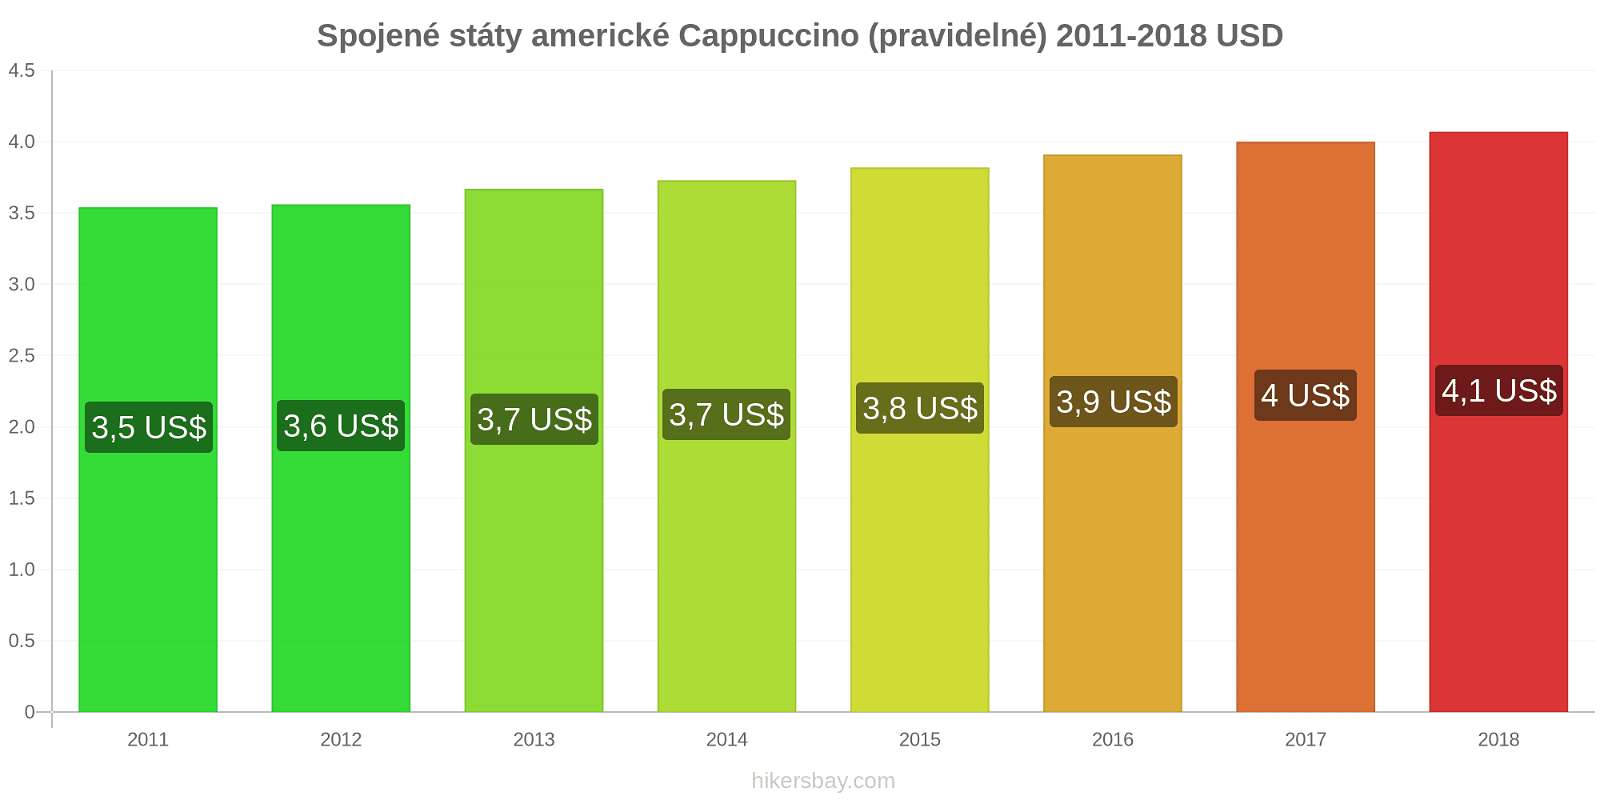 Spojené státy americké změny cen Cappuccino hikersbay.com